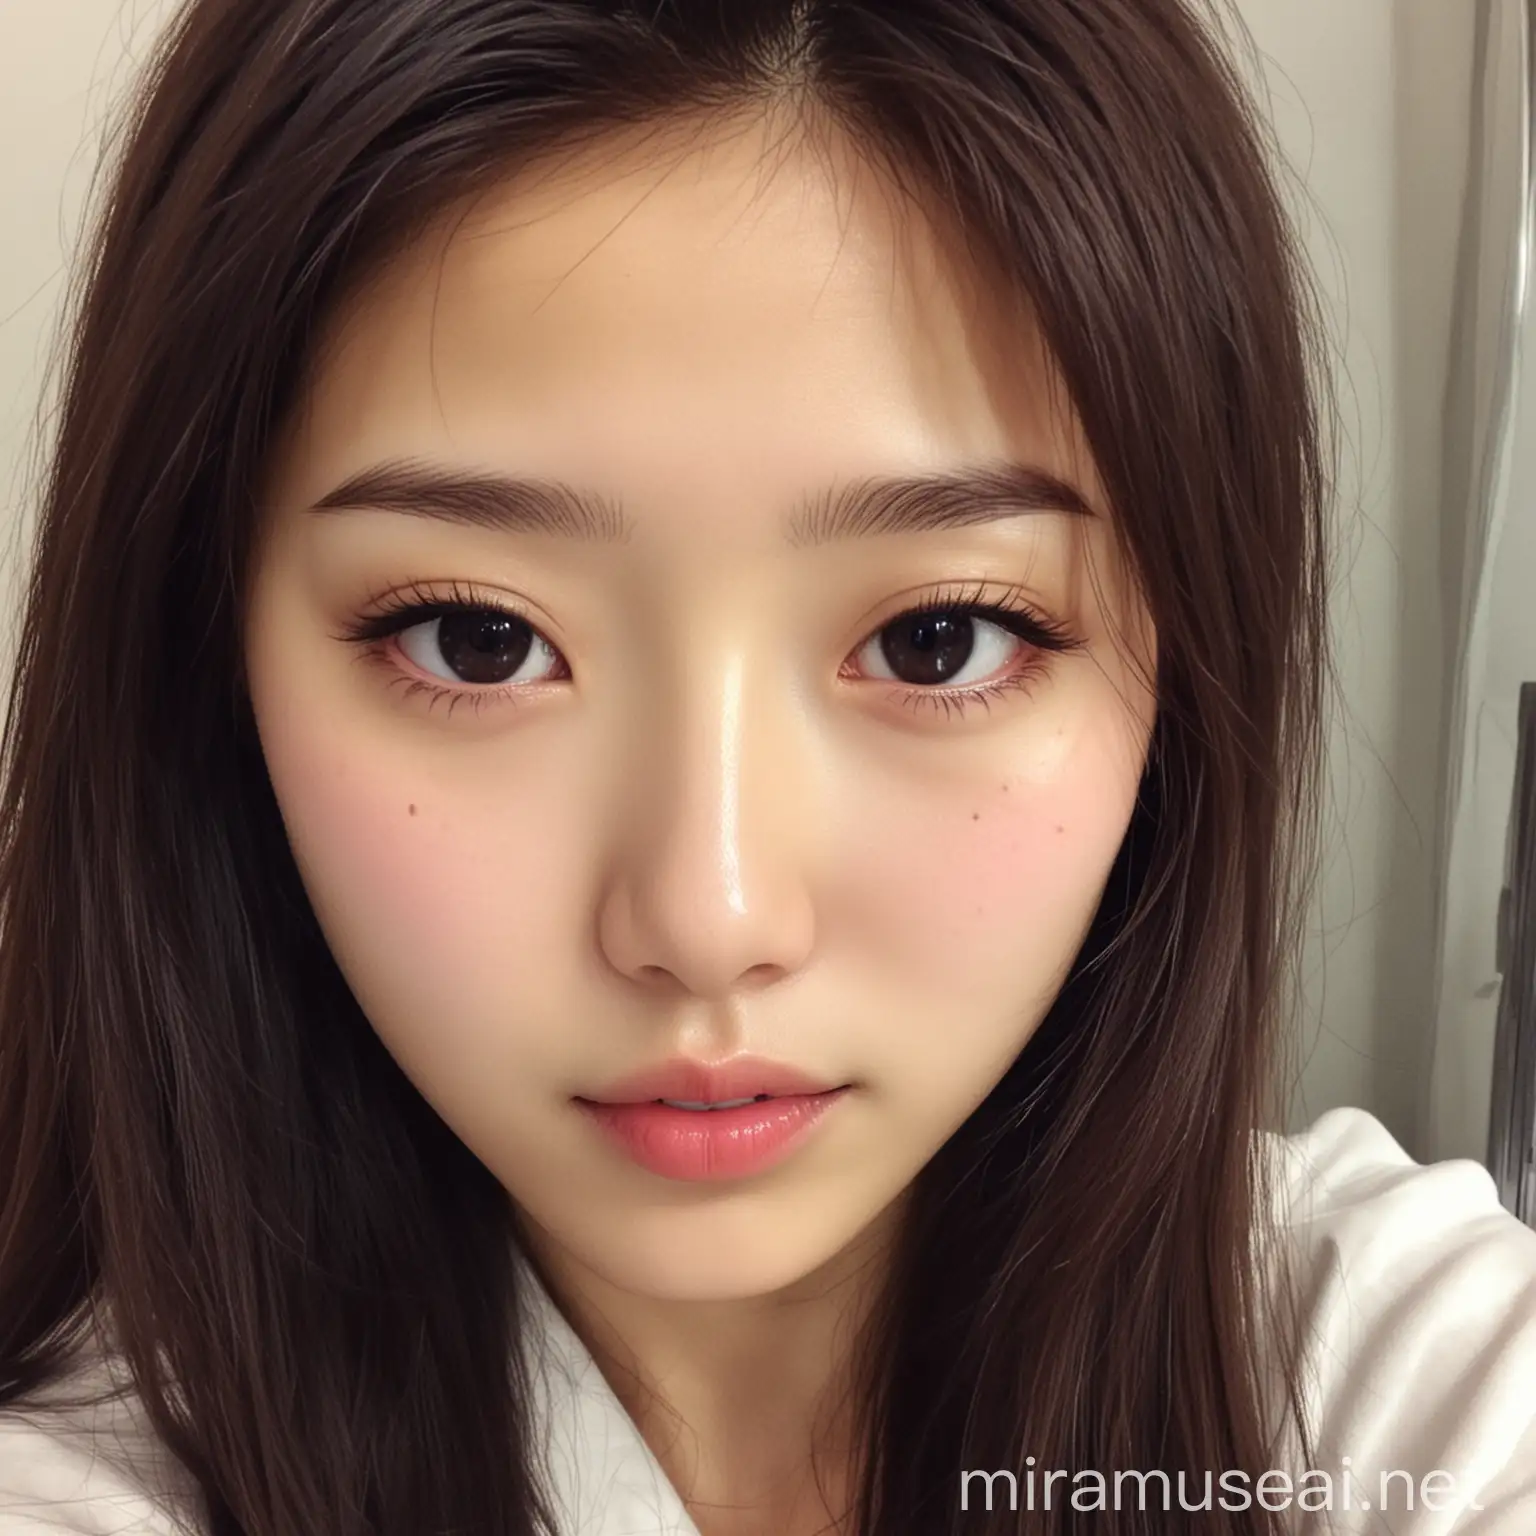 Korean beautiful girl selfie 